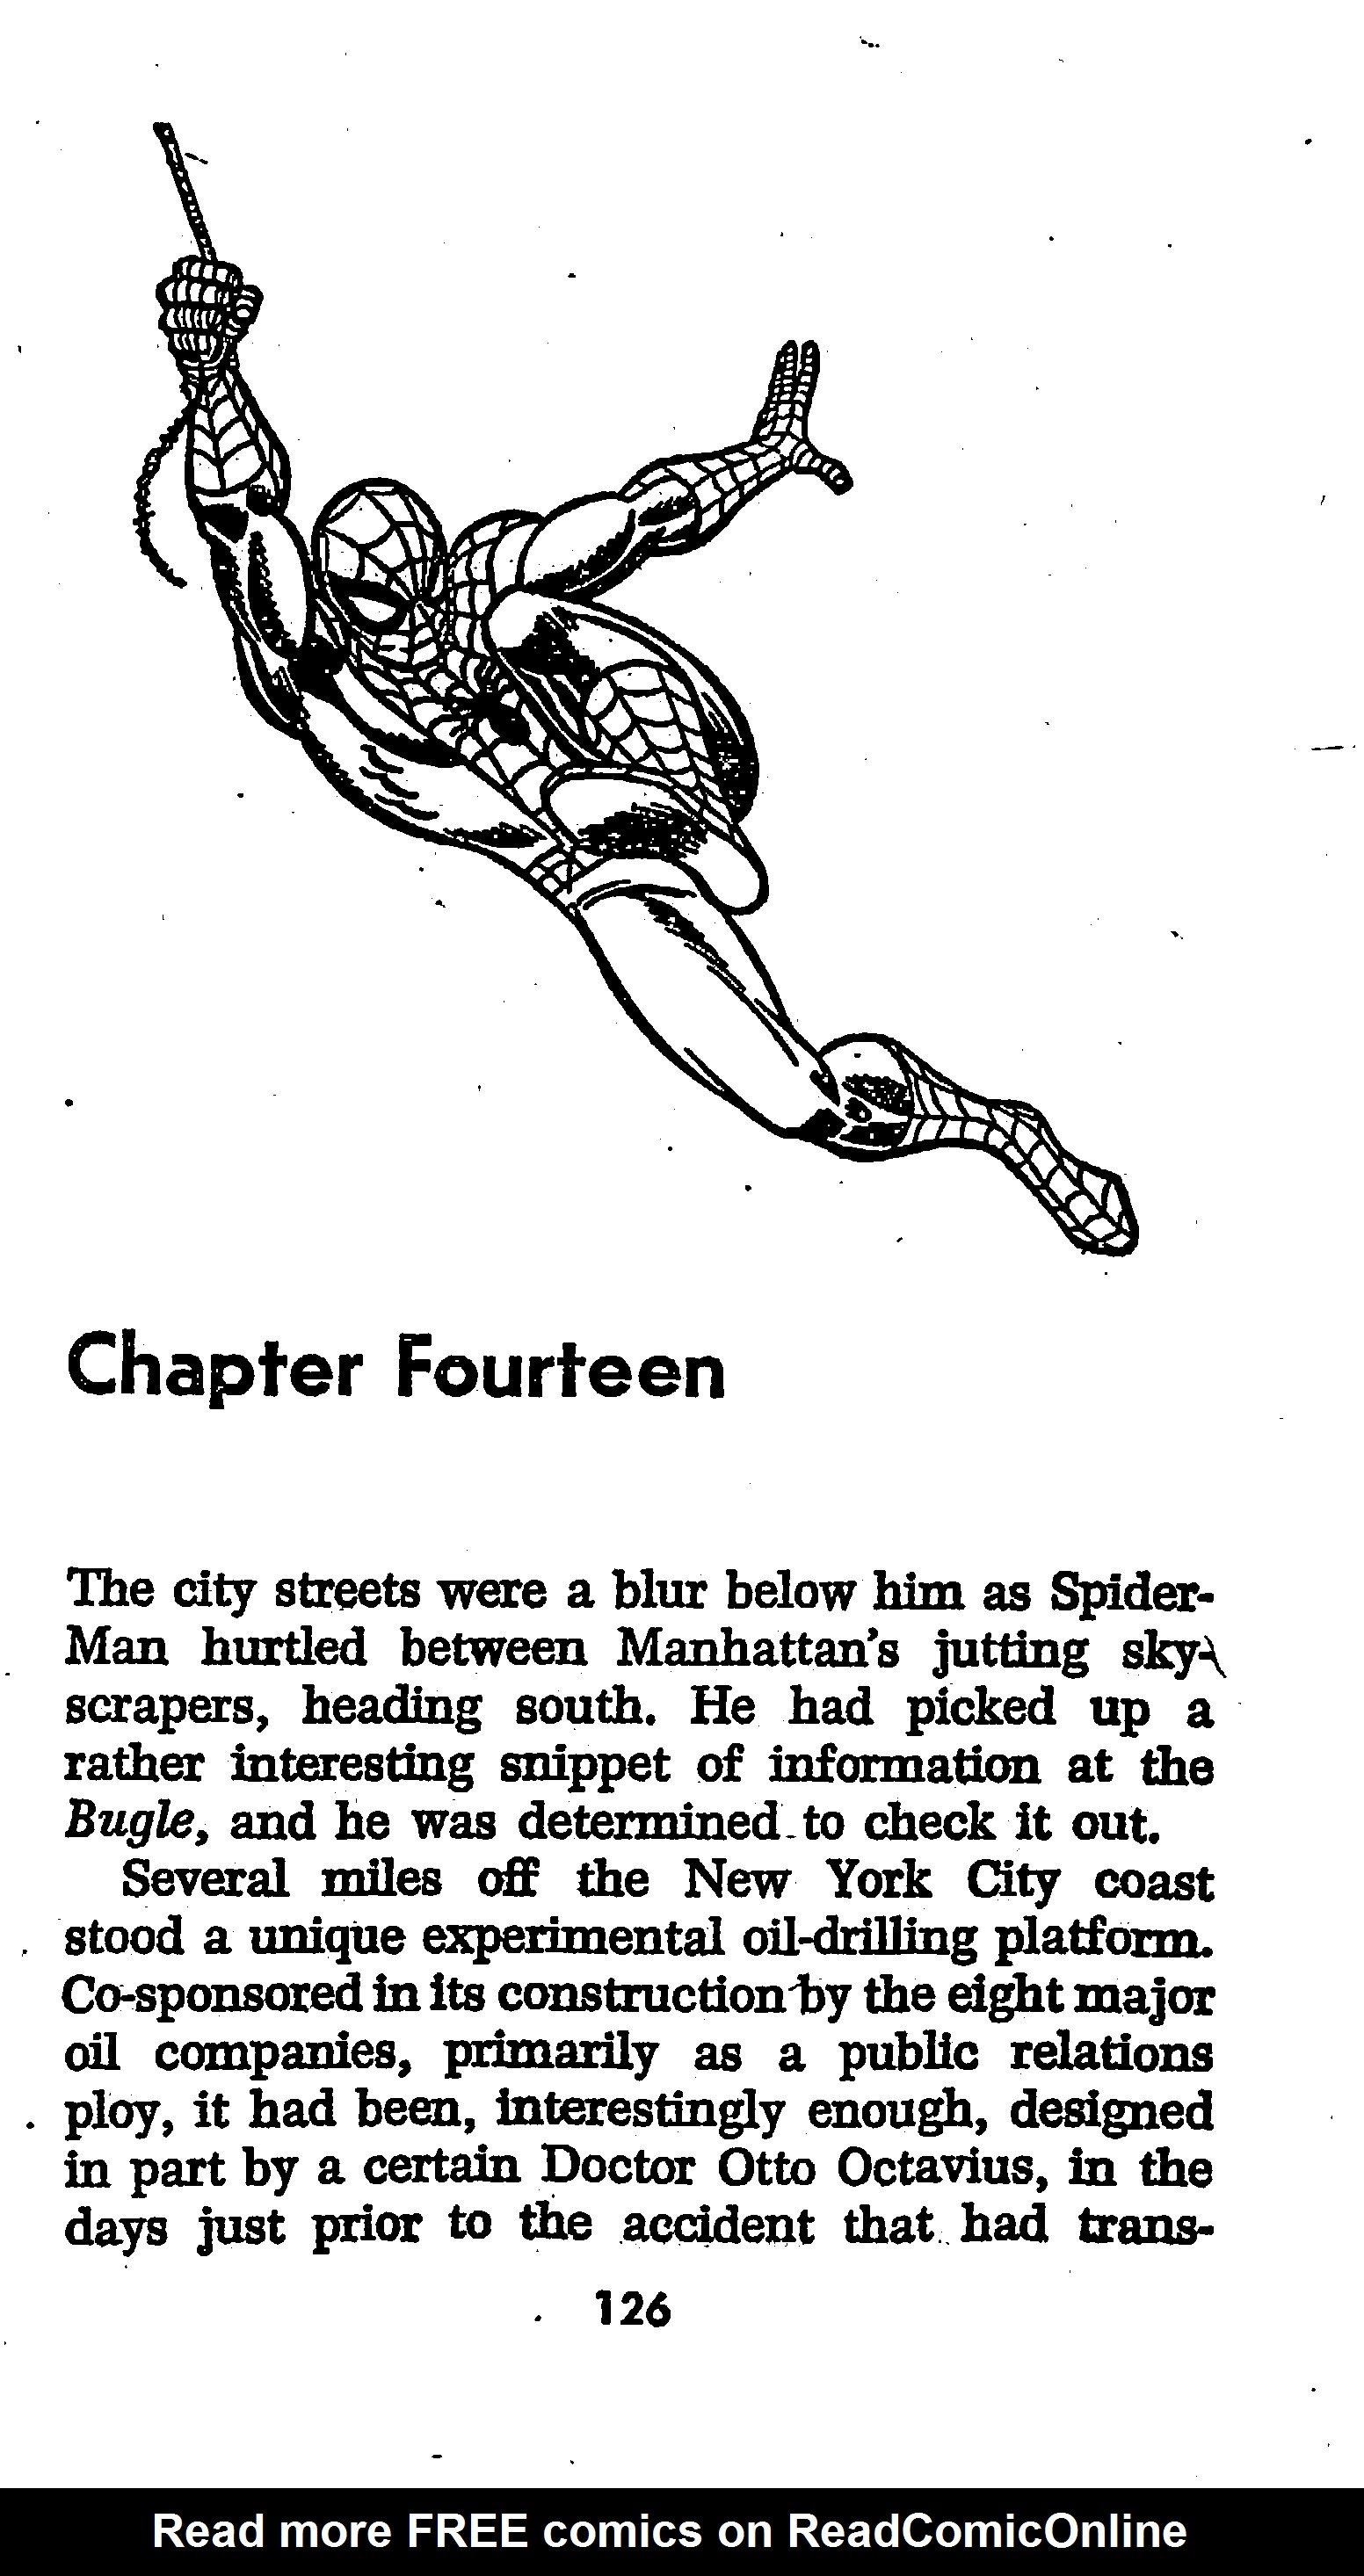 Read online The Amazing Spider-Man: Mayhem in Manhattan comic -  Issue # TPB (Part 2) - 28